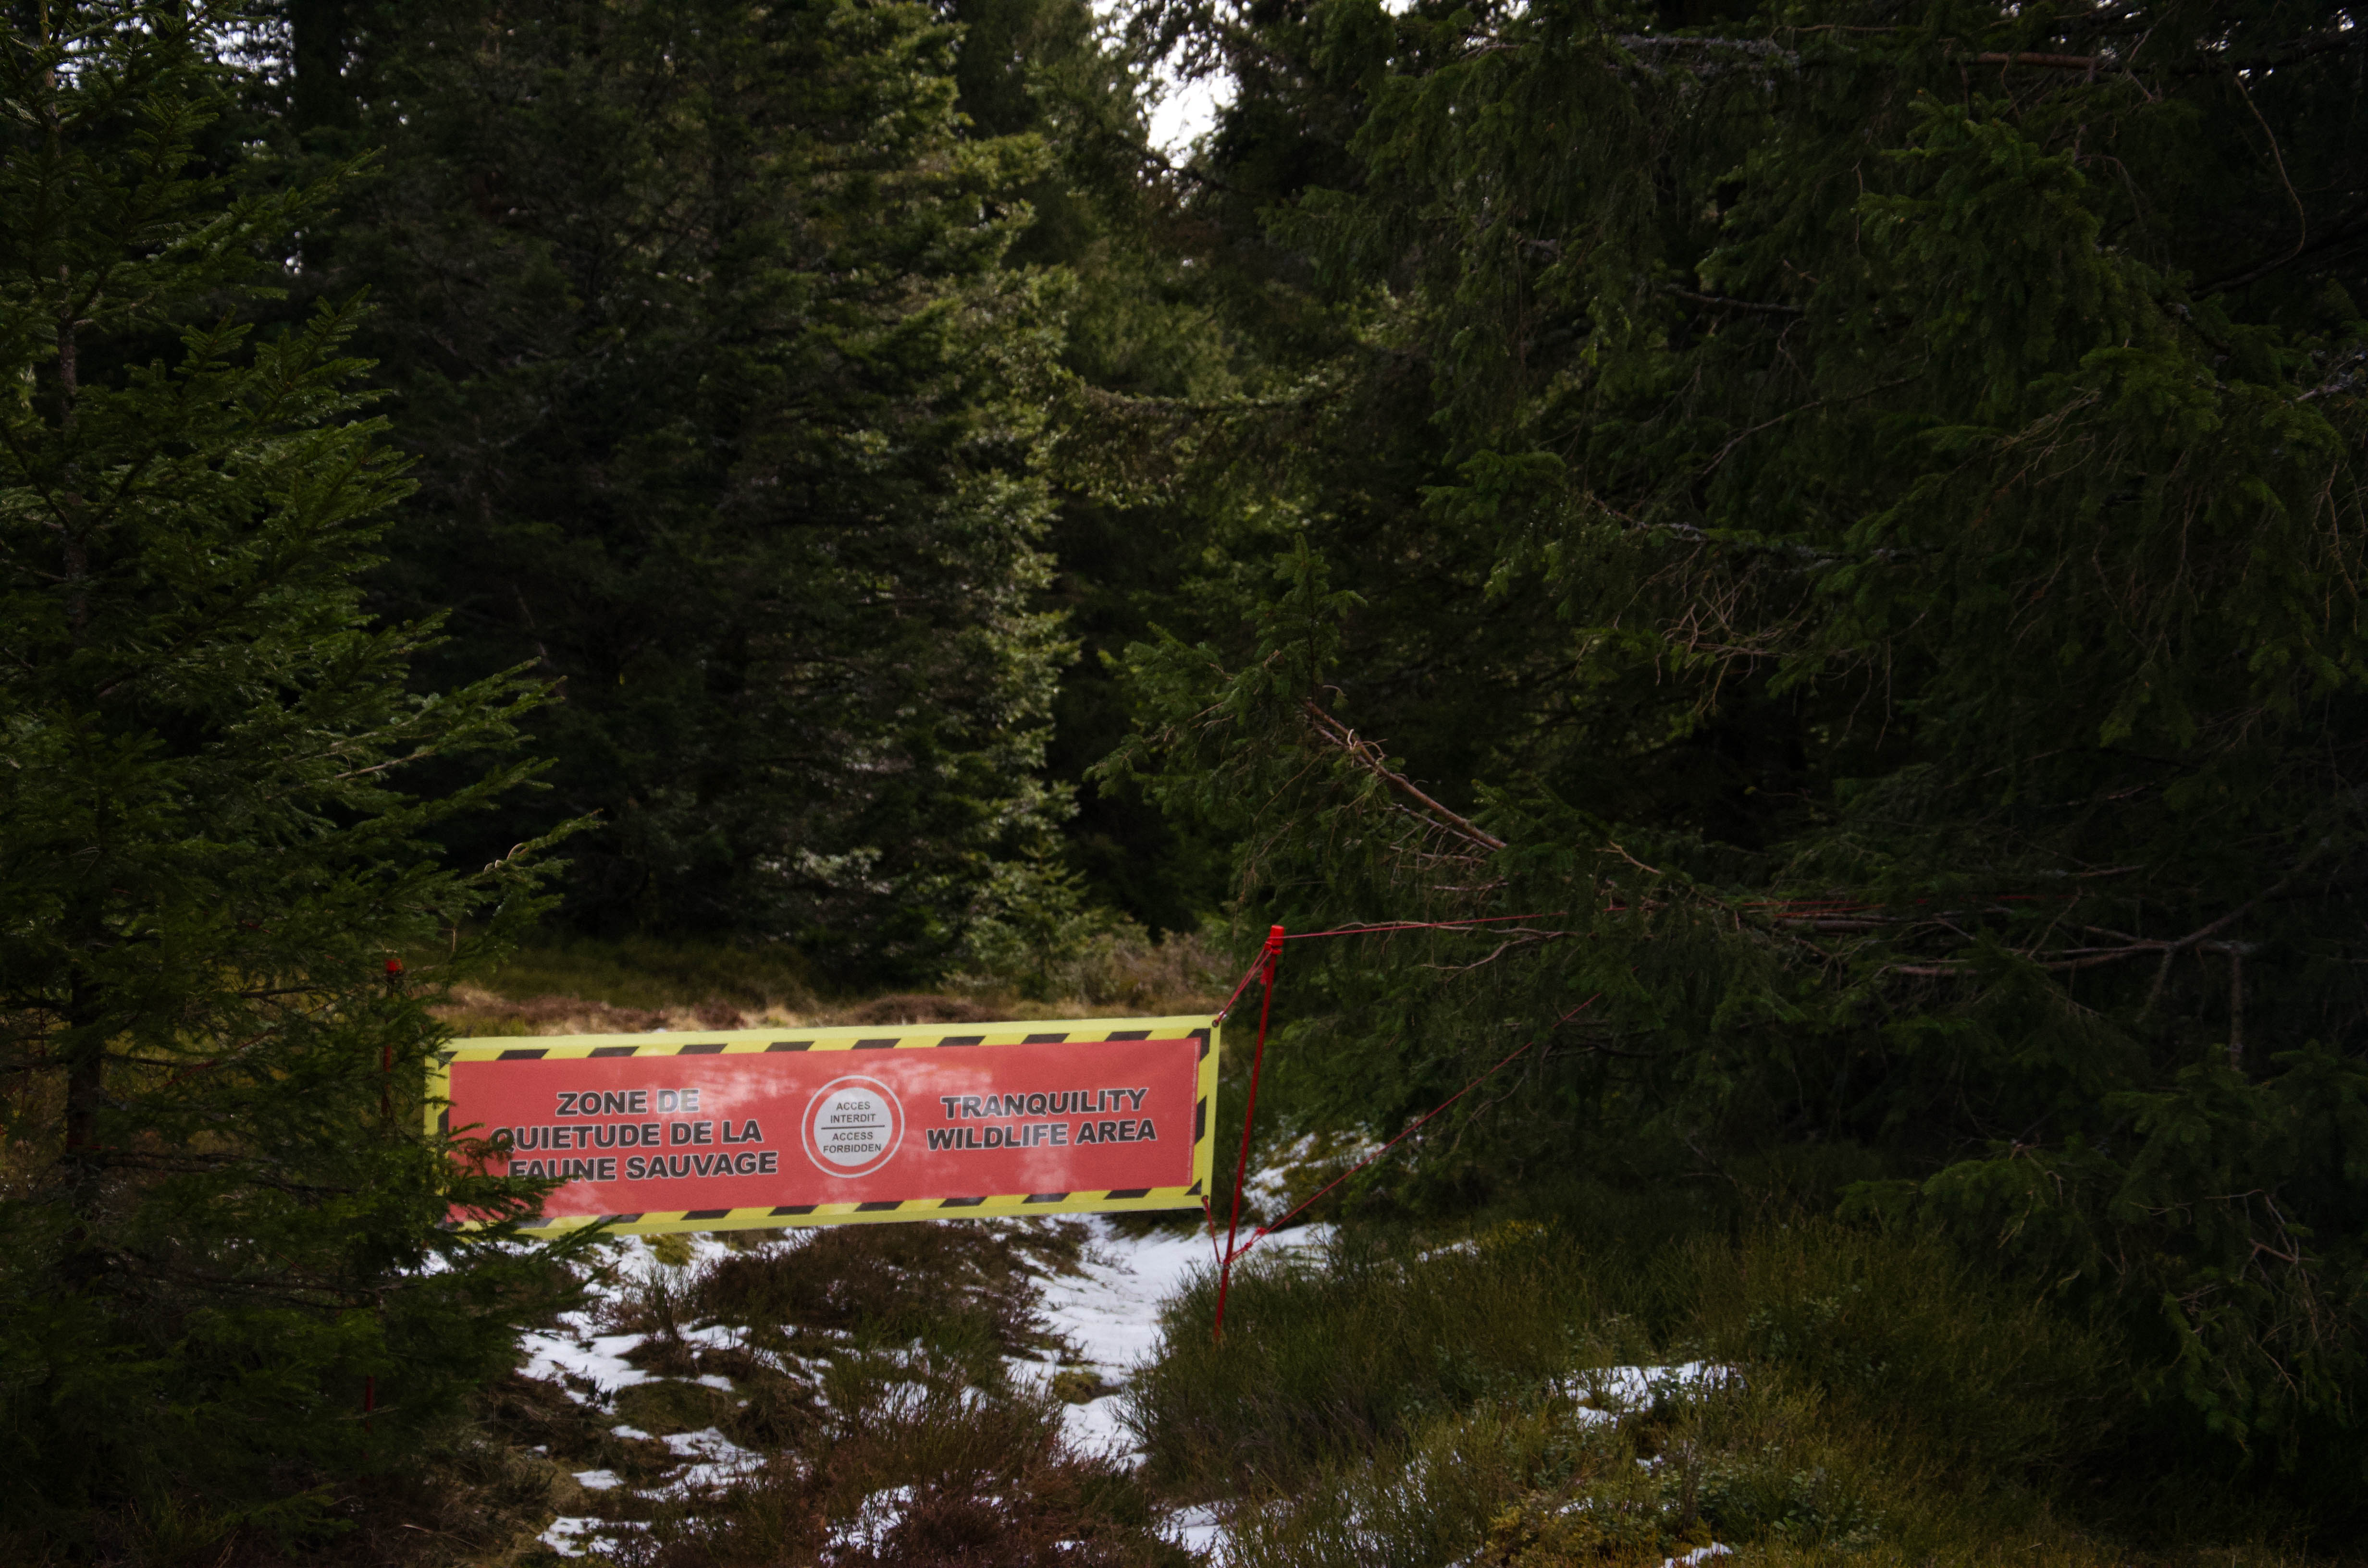 Des panneaux délimitent les zones de quiétude dans la réserve